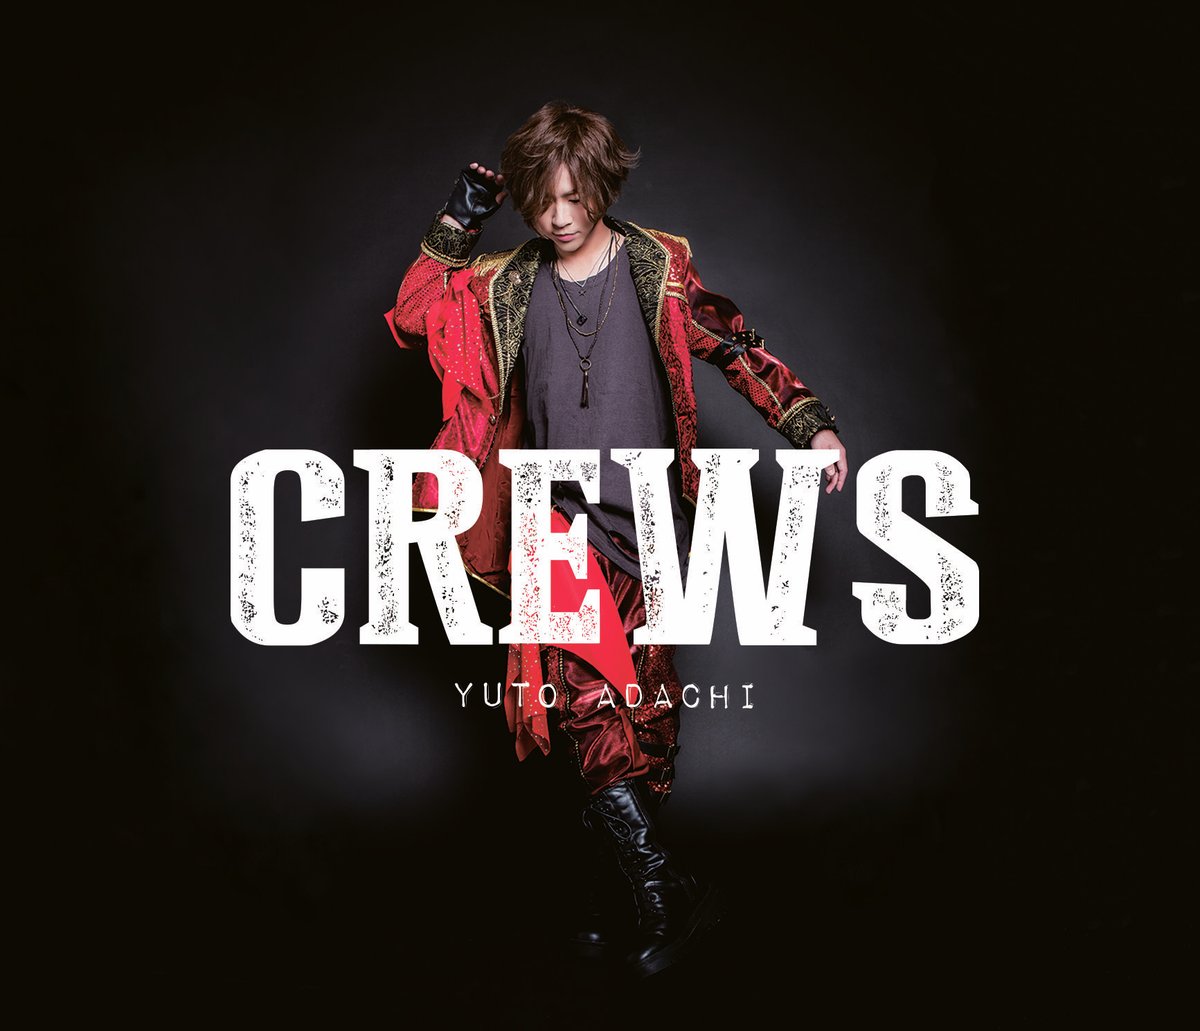 安達勇人4thアルバムCD「CREWS」(14曲入り)